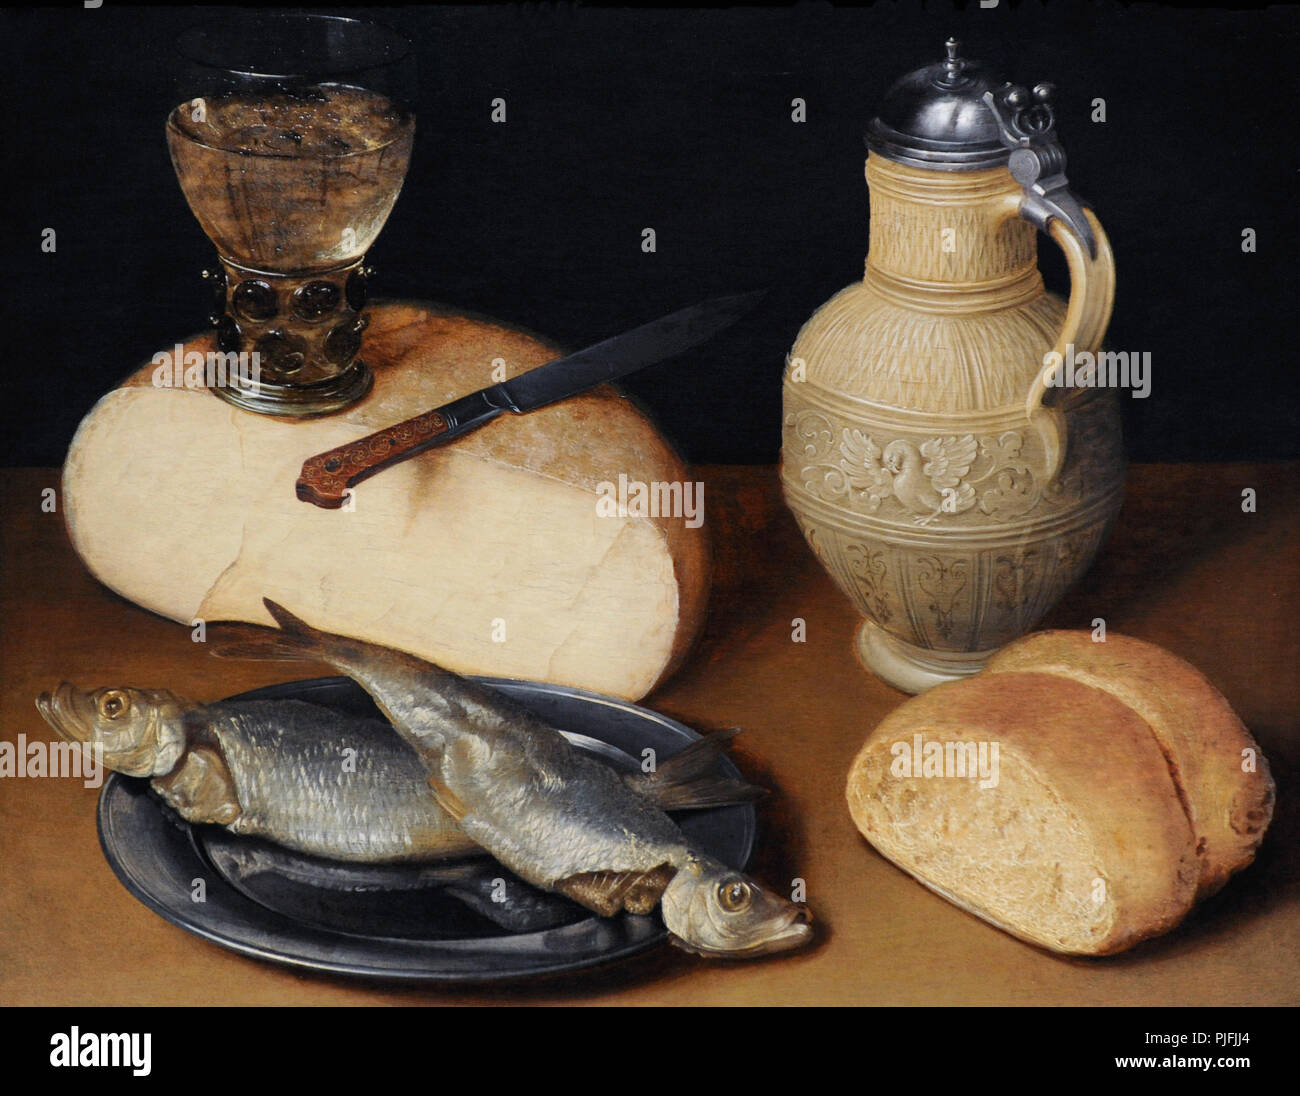 Wedig Gottfried von (1583-1641). Peintre allemand. Nature morte avec du fromage, du poisson et des Jug, ca.1630-1640. Musée Wallraf-Richartz. Cologne. L'Allemagne. Banque D'Images